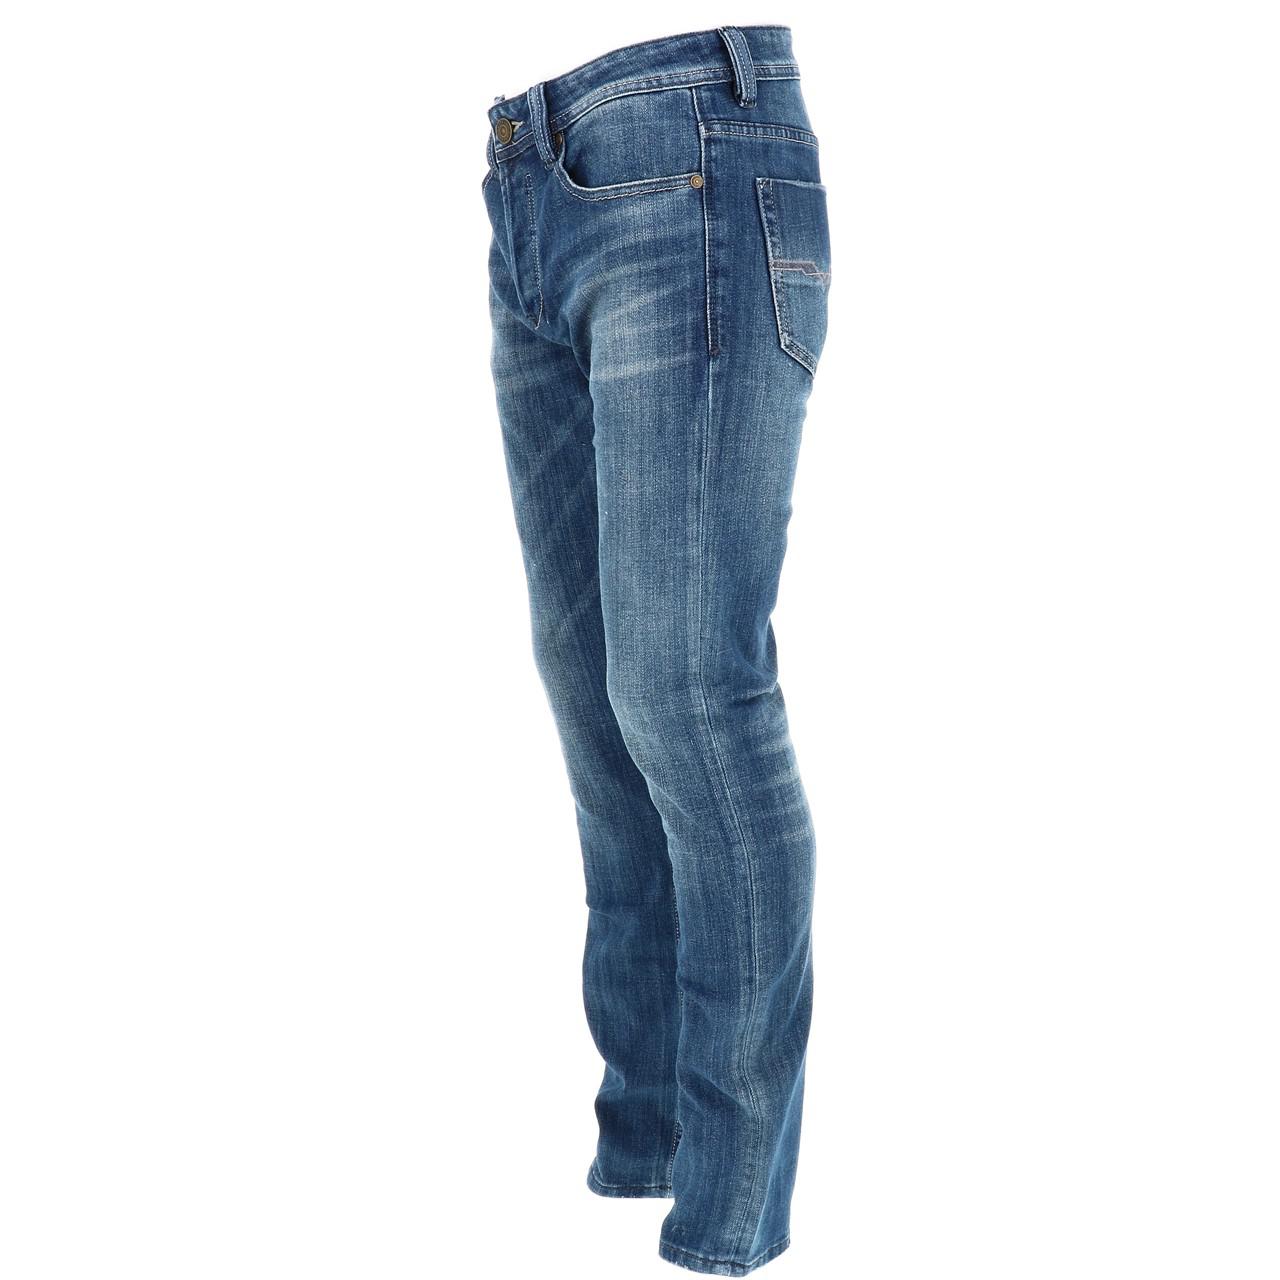 Leo gutti jeans trousers leo gutti jeans 9 1806 81692 blue-new | eBay